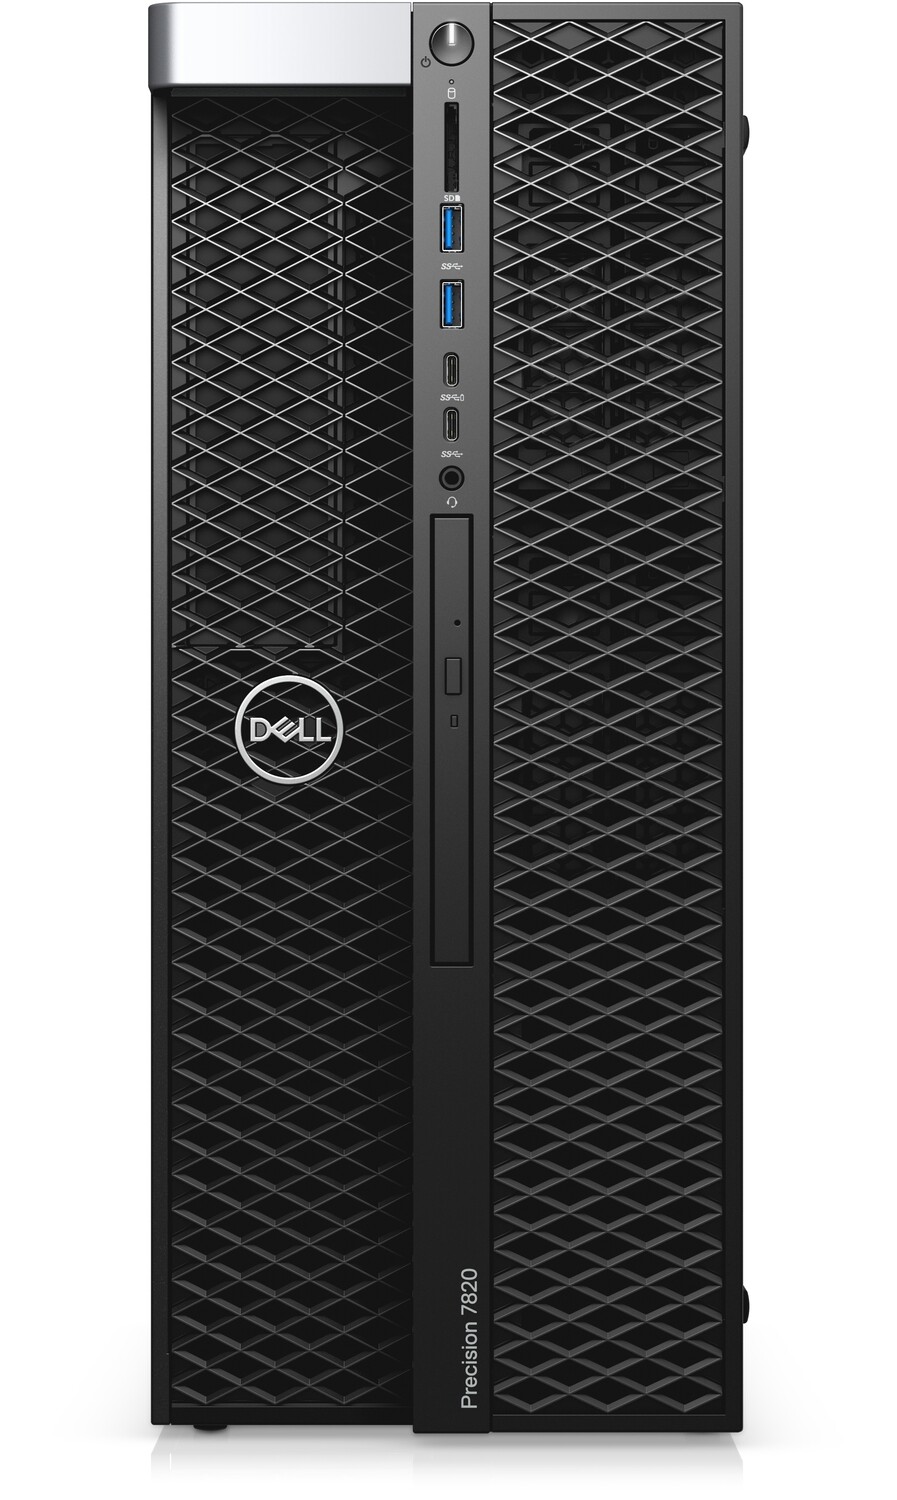 Dell Precision 7820 Tower Dual 6 Core Intel Xeon Bronze 3104 (Total 12 Cores) | 32GB | 1TB (500x2) | Quadro 2000 | Windows 10 Pro for Workstations